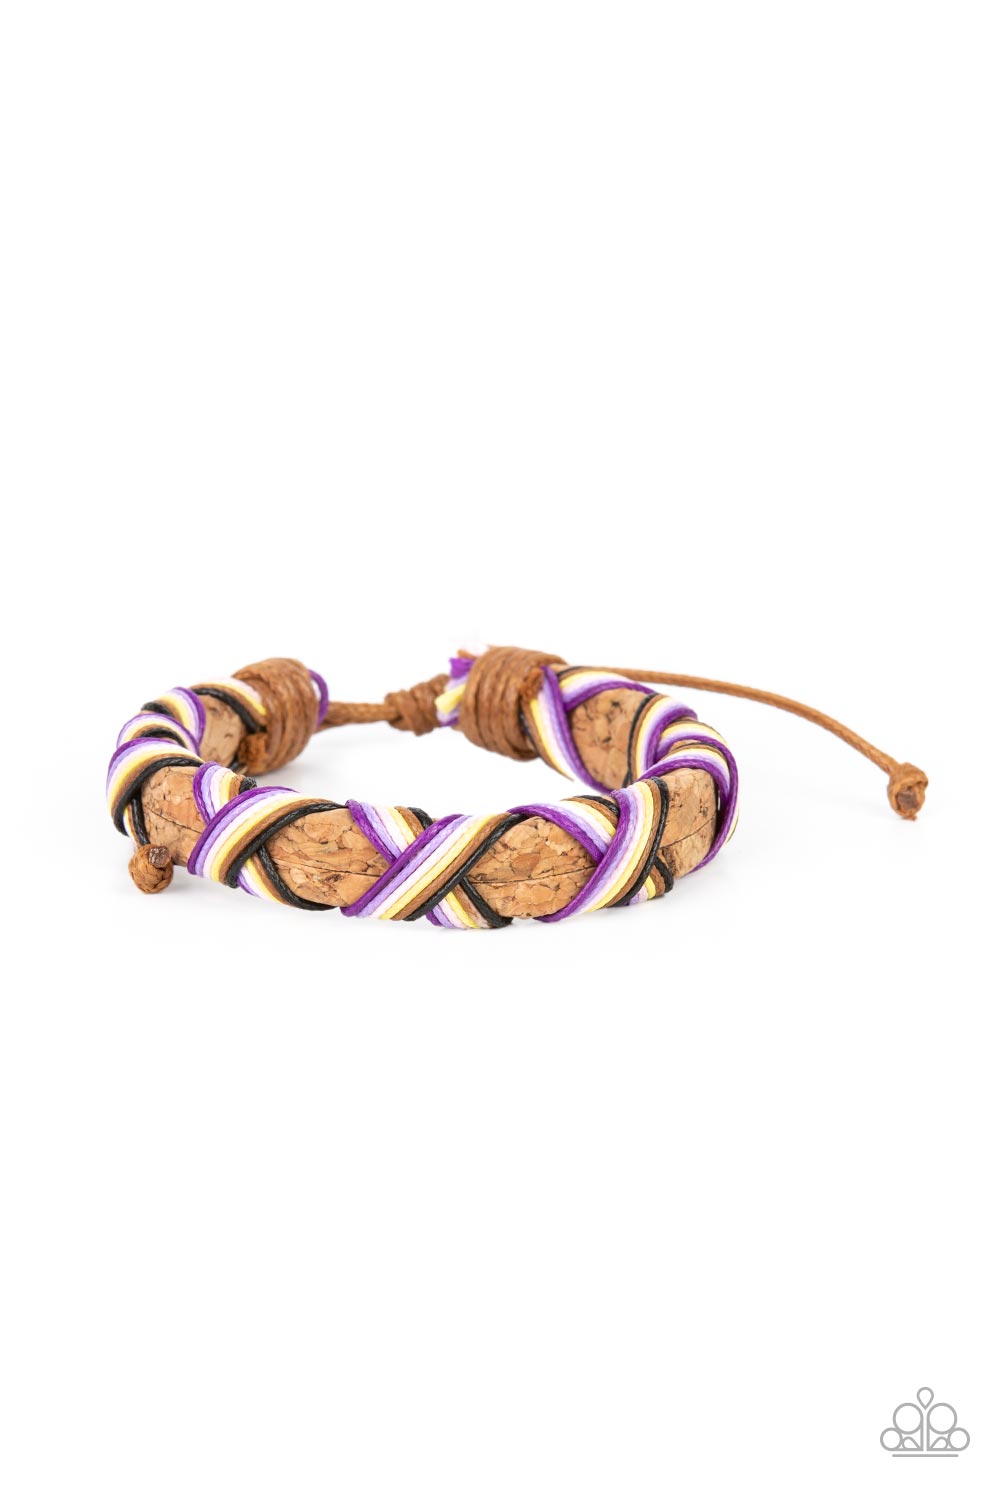 Desert Pirate Multi Bracelet